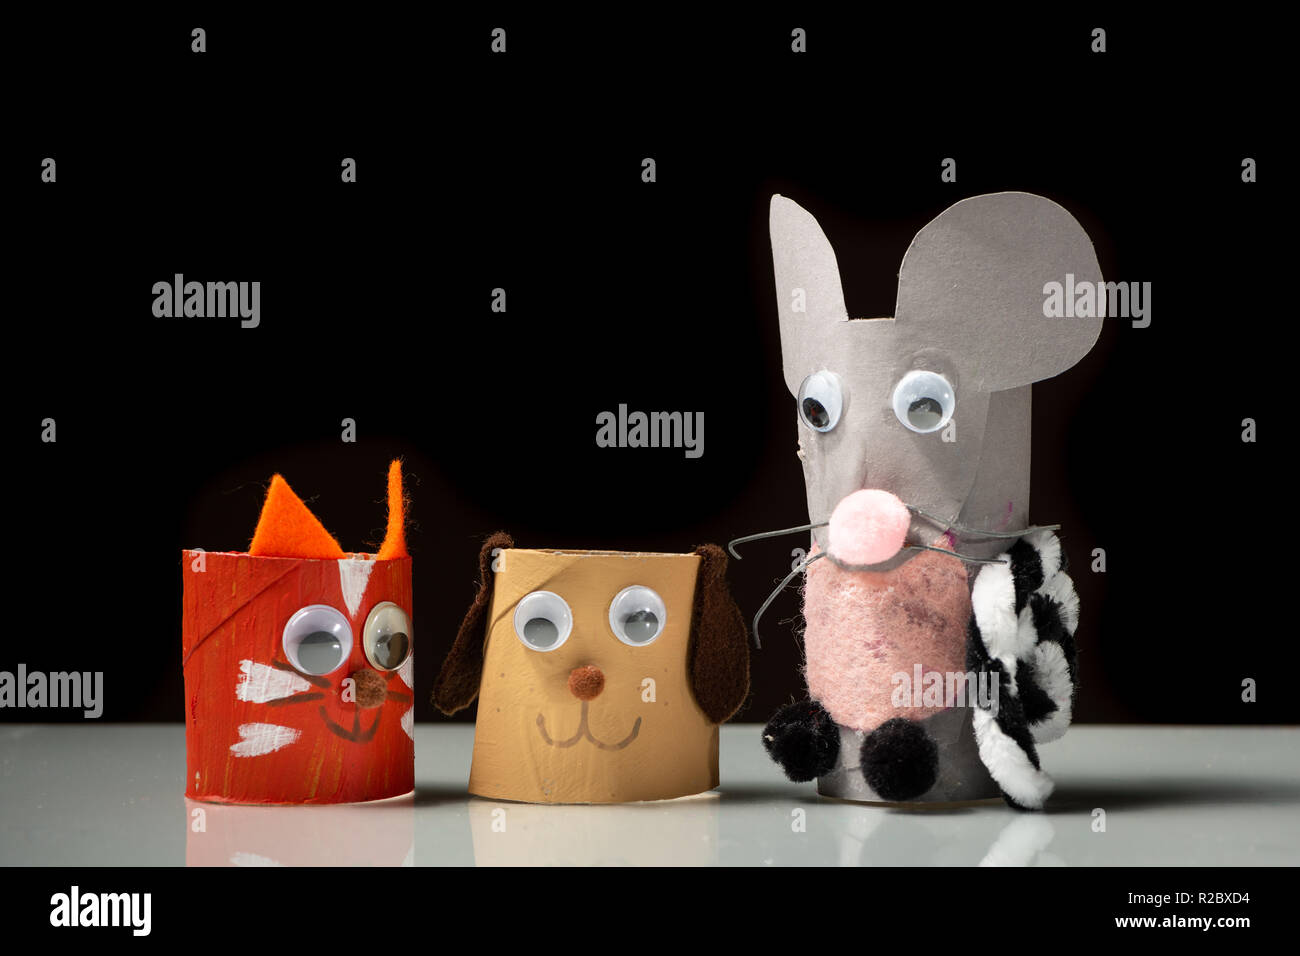 Nahaufnahme von Katze, Hund und Maus aus klopapierrolle durch ein Kind,  schwarzer Hintergrund Stockfotografie - Alamy